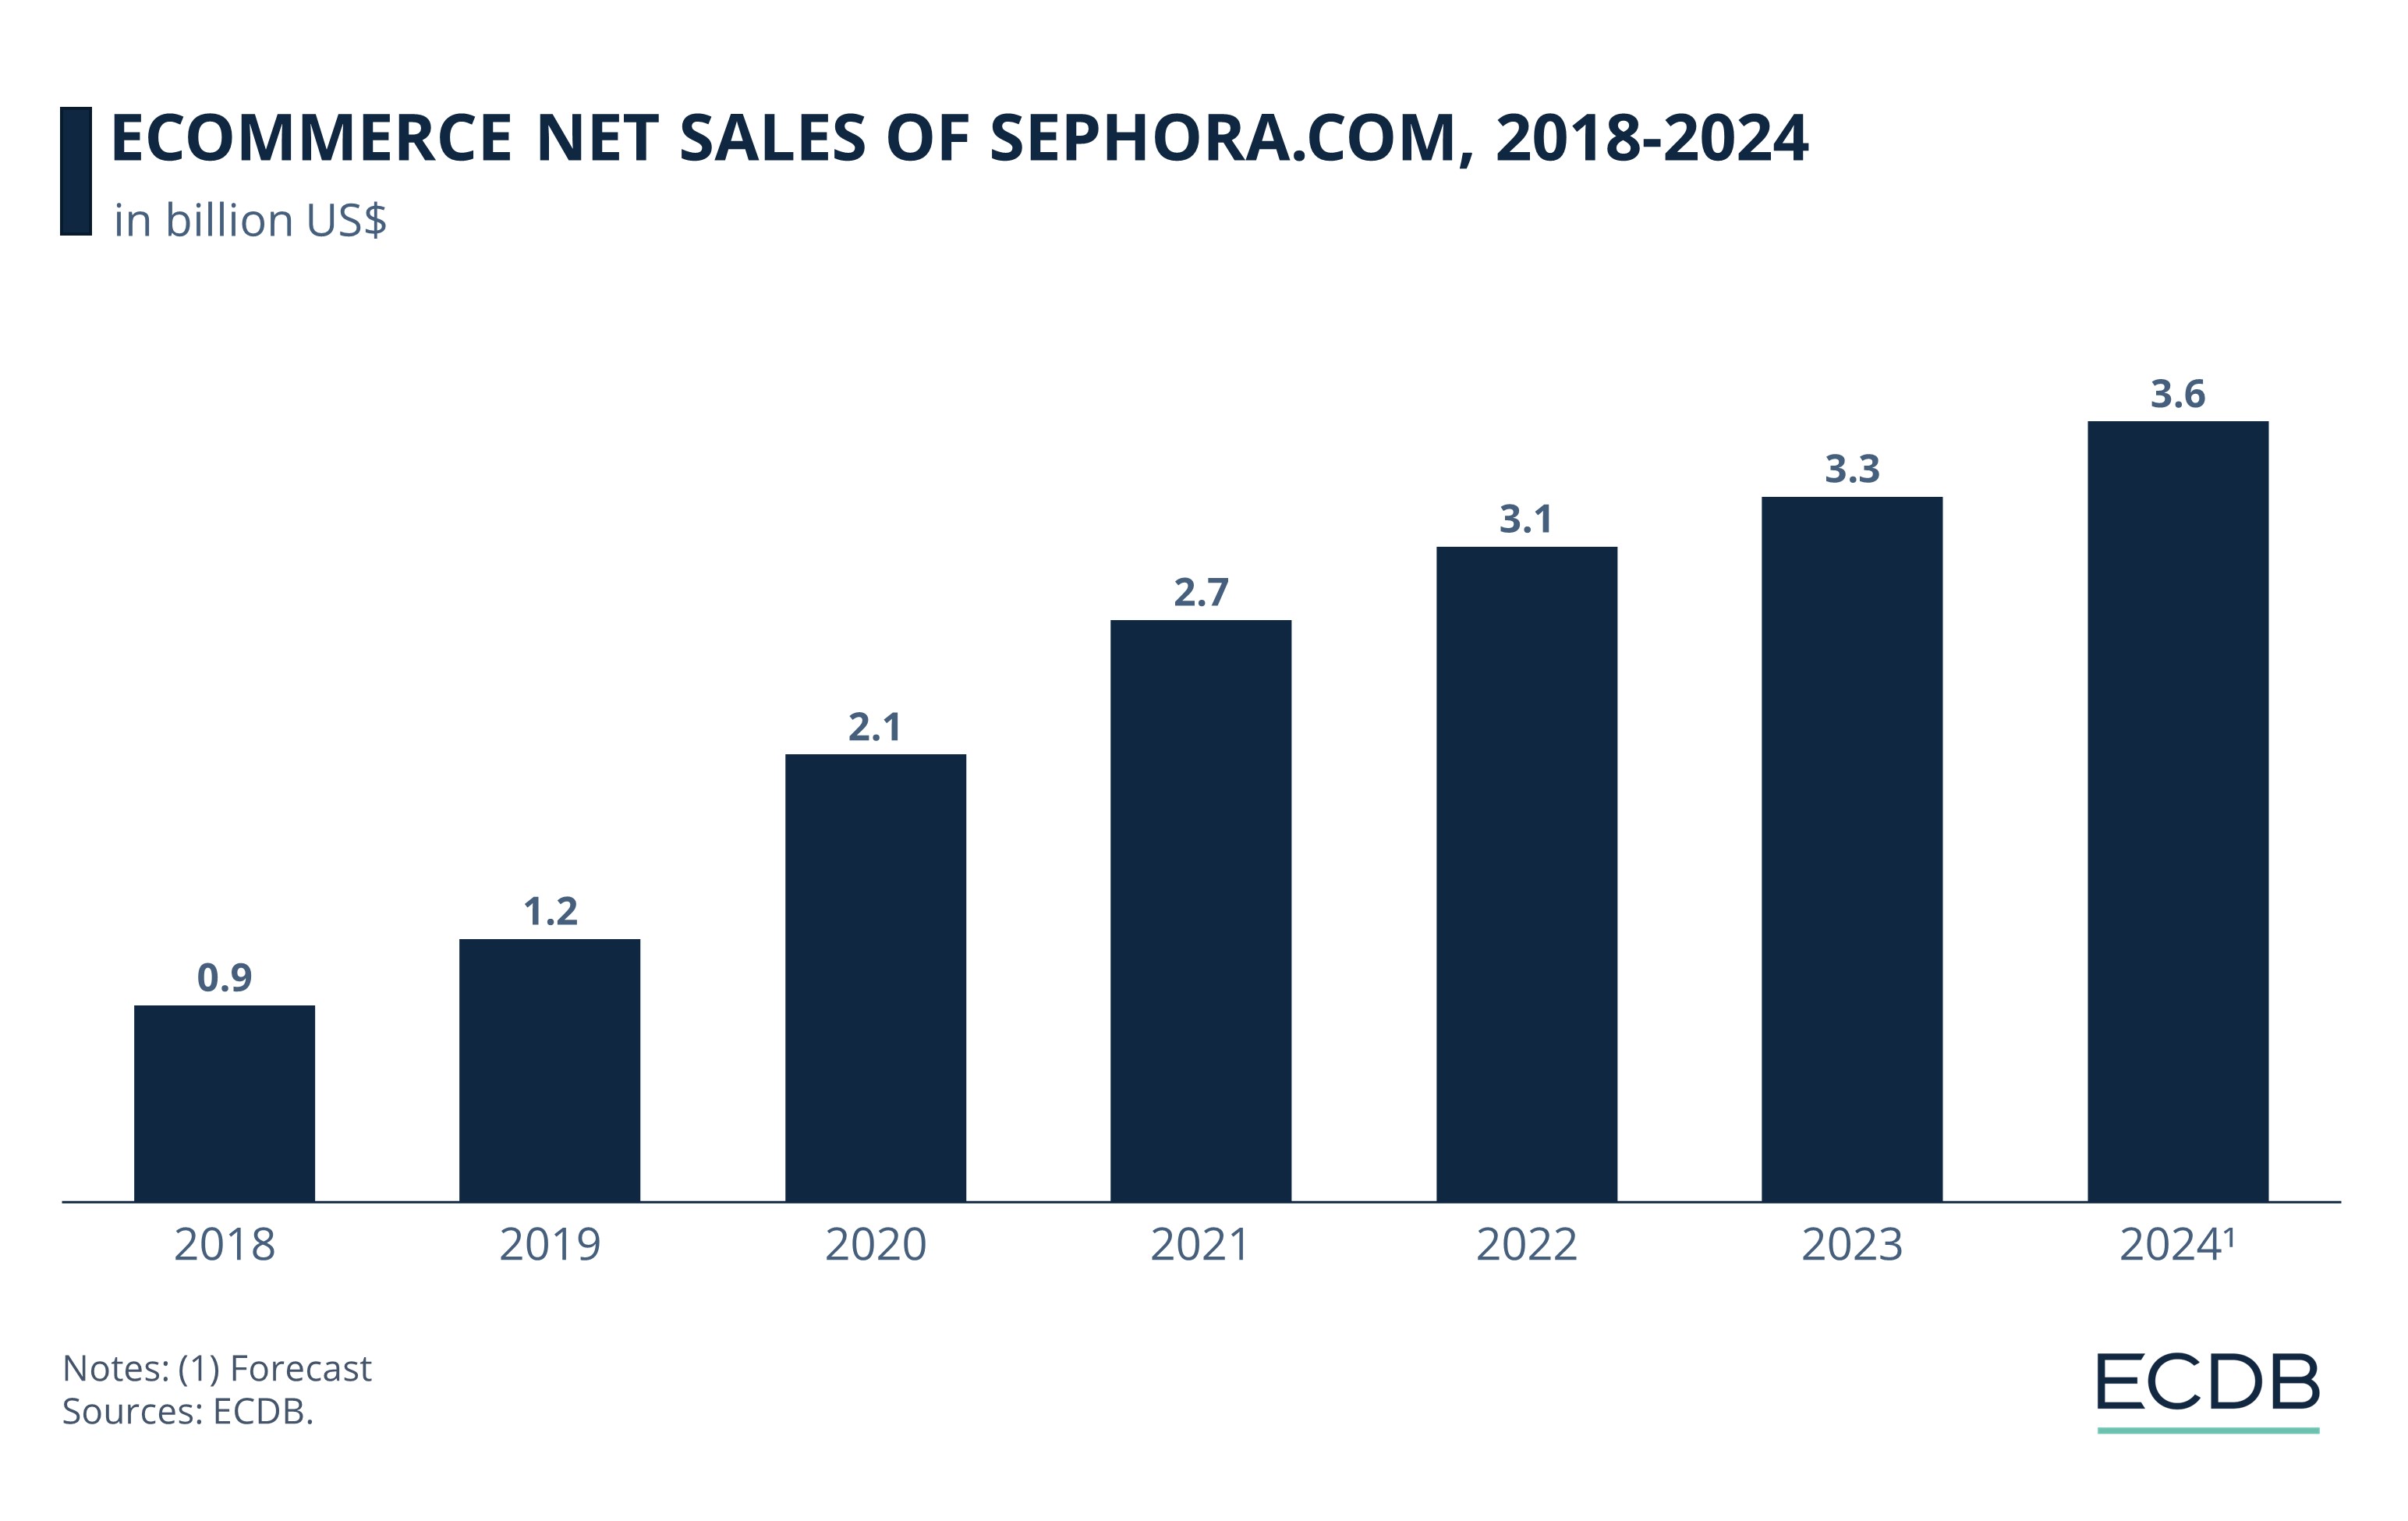 eCommerce Net Sales of Sephora.com, 2018-2024